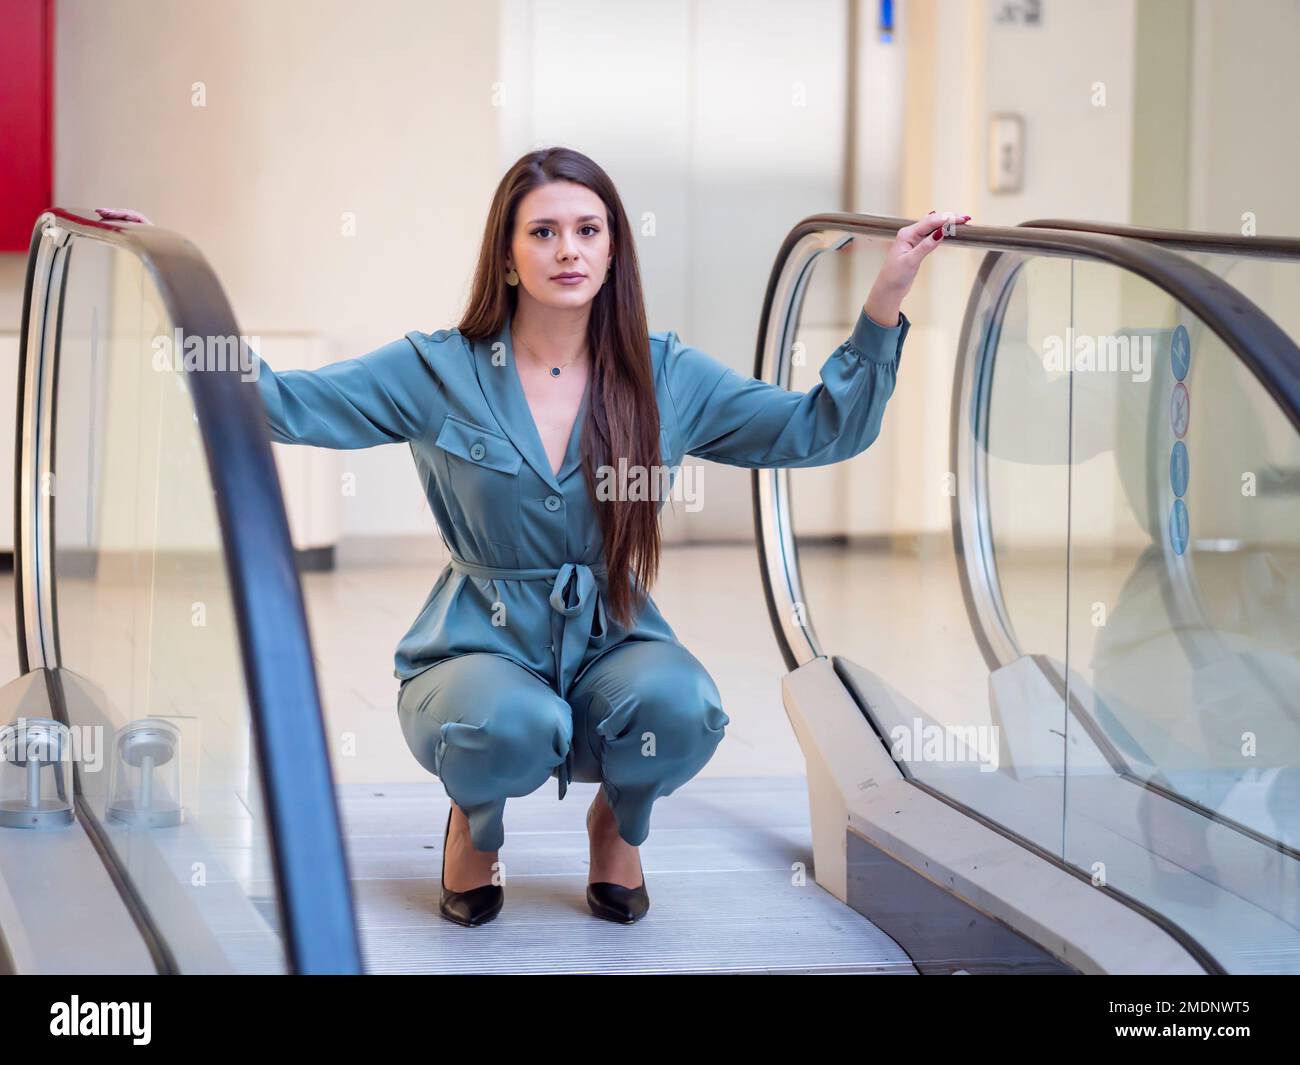 Giovane donna fantasiosa in negozio vuoto squatting squat spargere mani braccia prima scala mobile scala scale guardando la fotocamera occhio occhi contatto Foto Stock